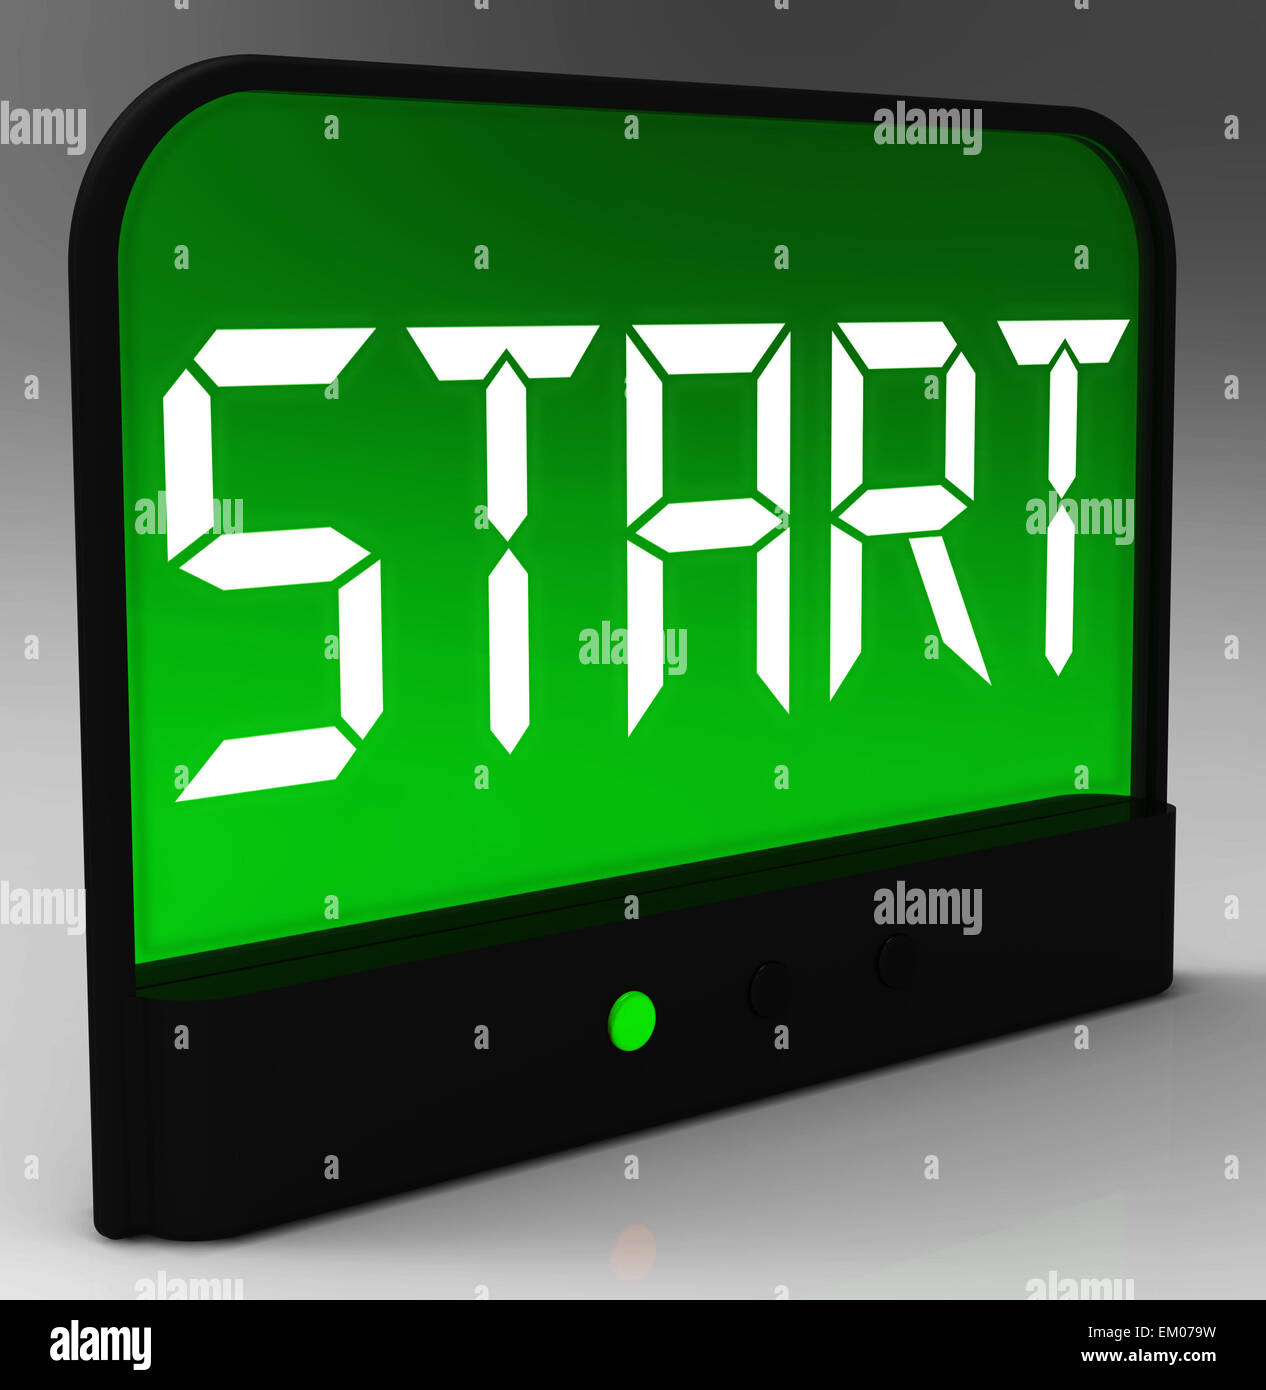 Schaltfläche "Start" auf der Uhr zeigt beginnend oder Aktivierung Stockfoto